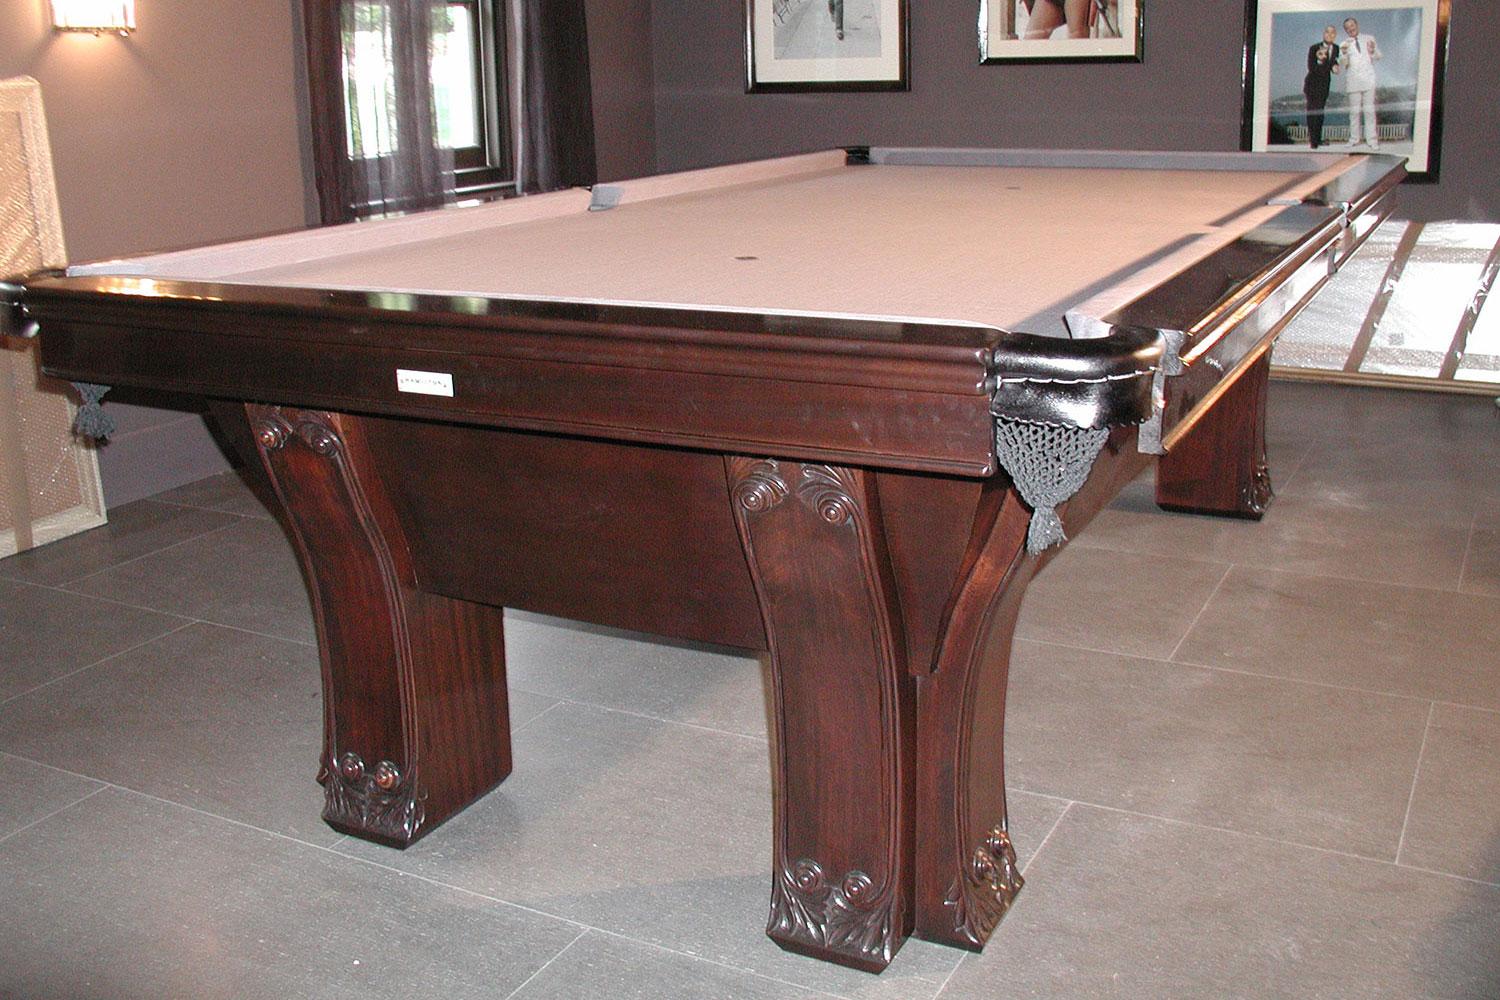 Custom Built Replica American Pool Table